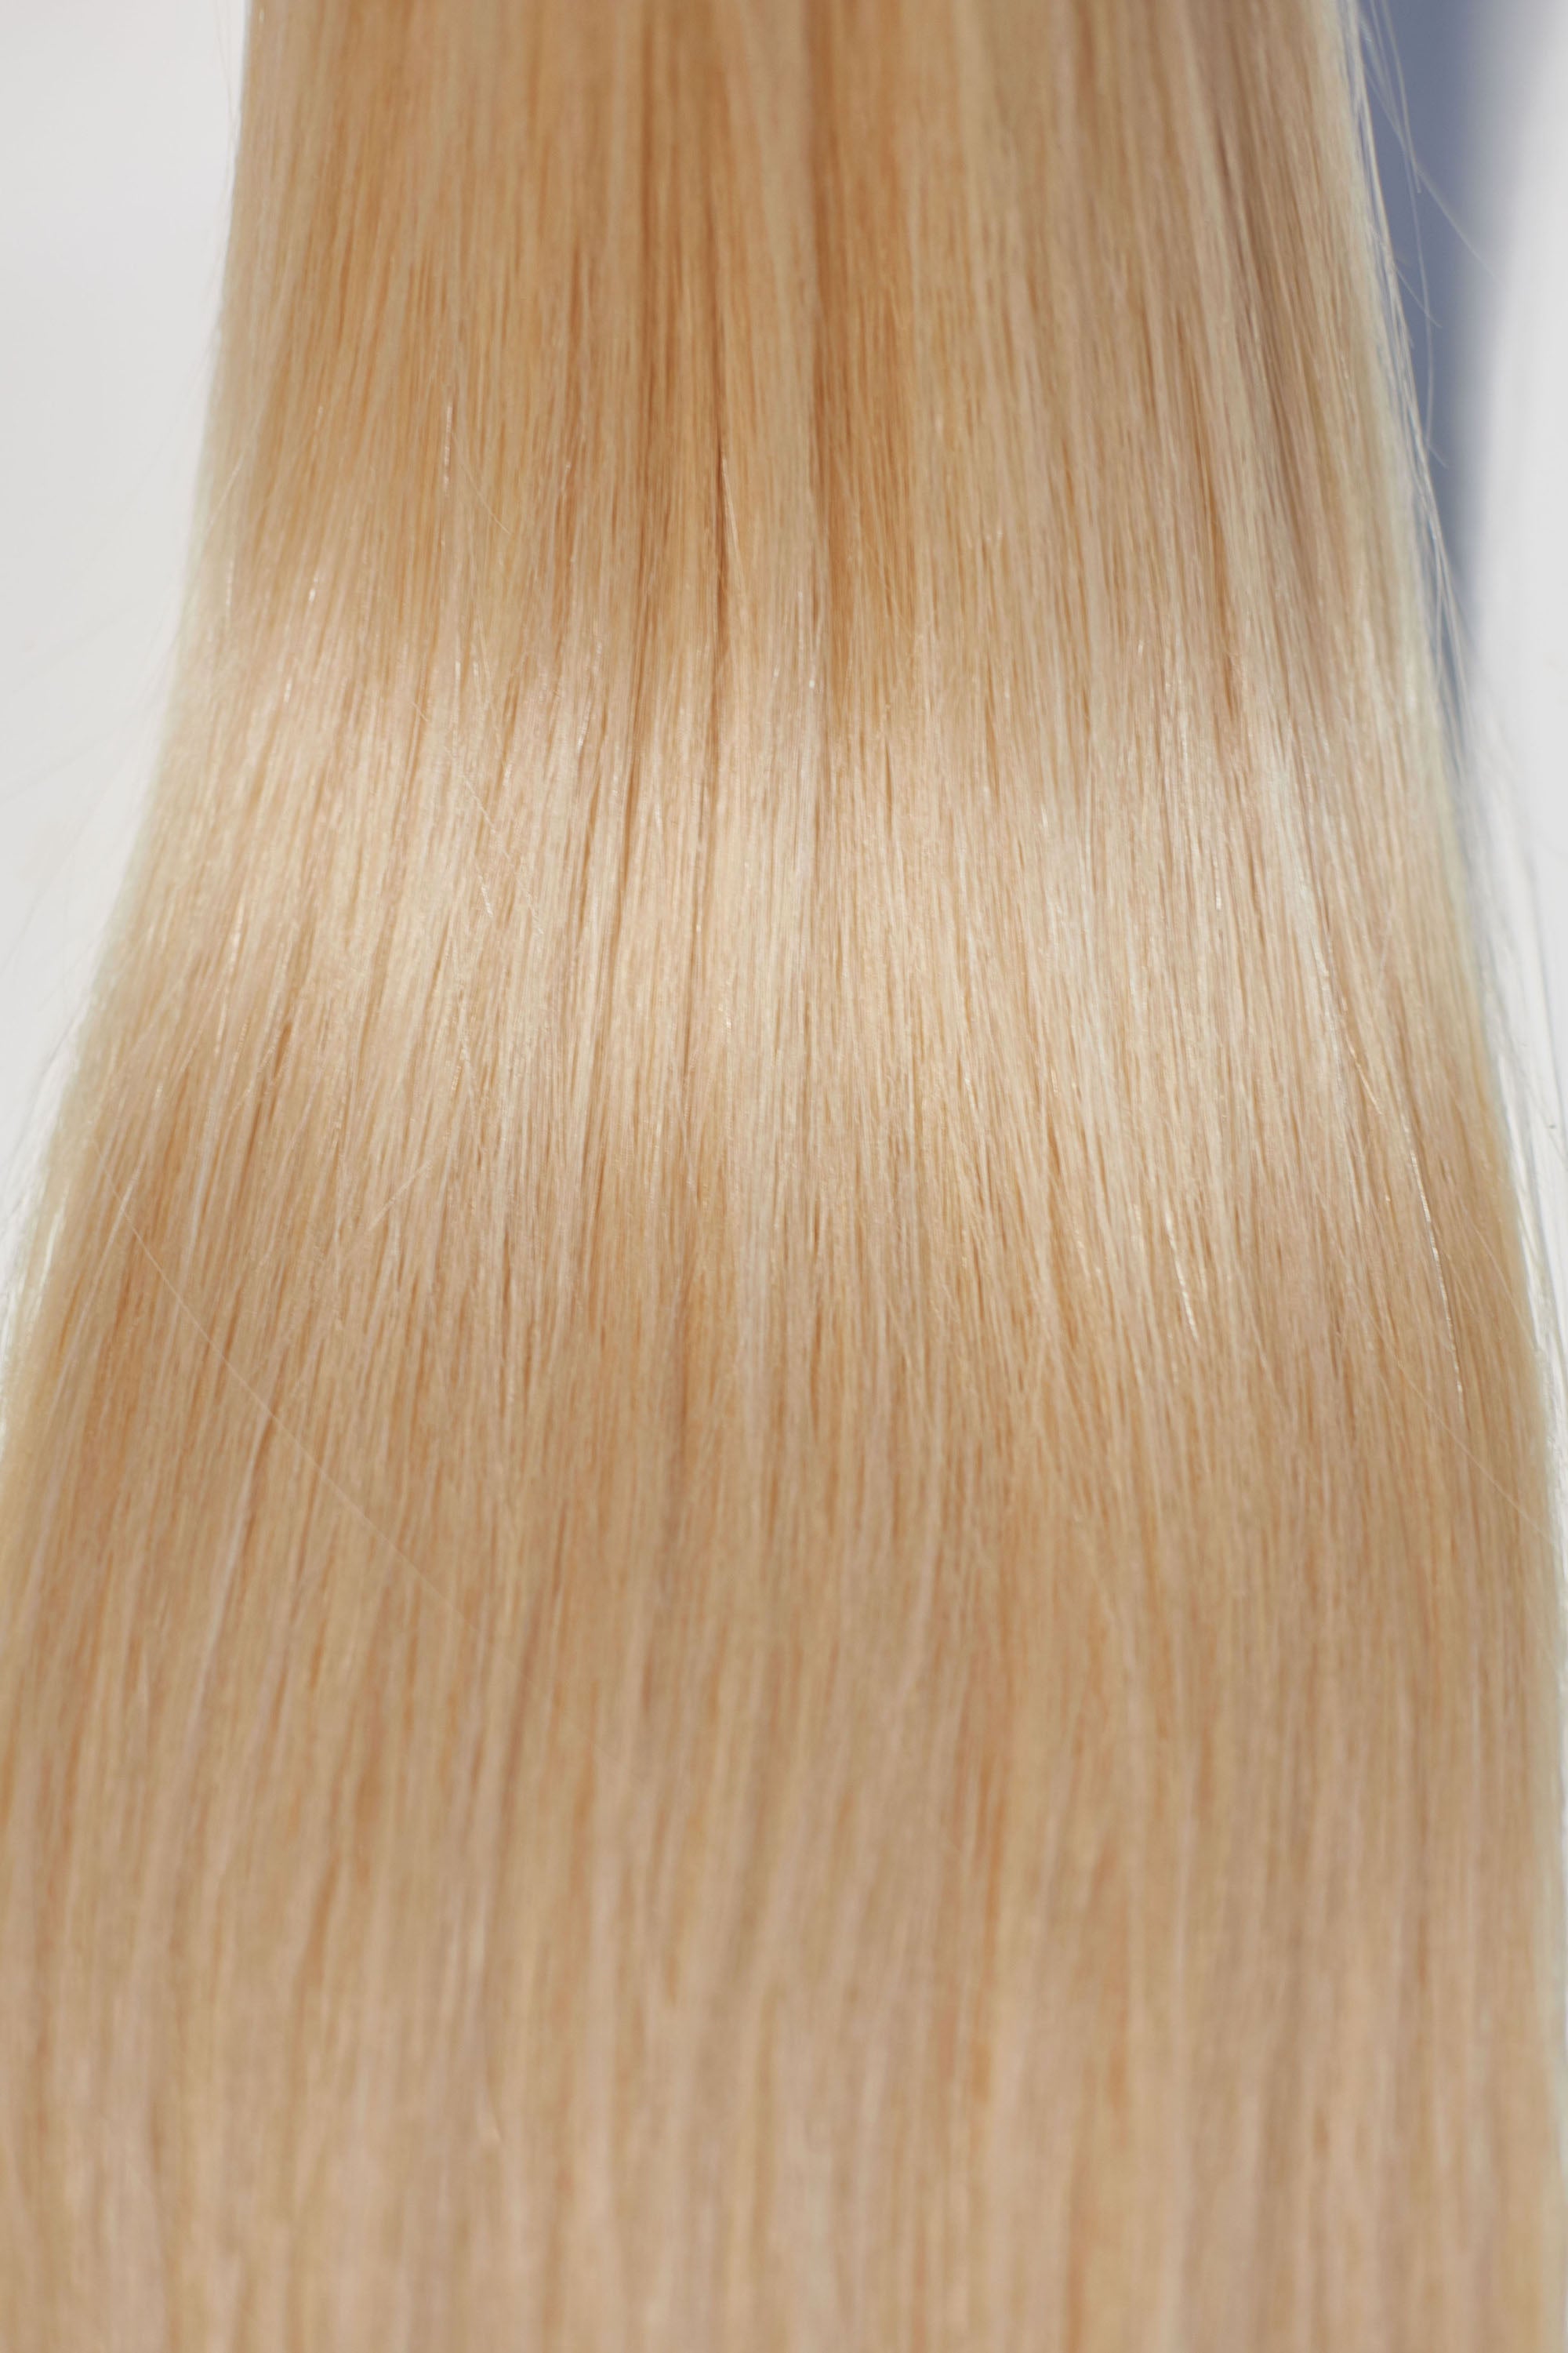 Behair professional Keratin Tip "Premium" 16" (40cm) Natural Straight Beach Blonde #613 - 25g (Micro - 0.5g each pcs) hair extensions